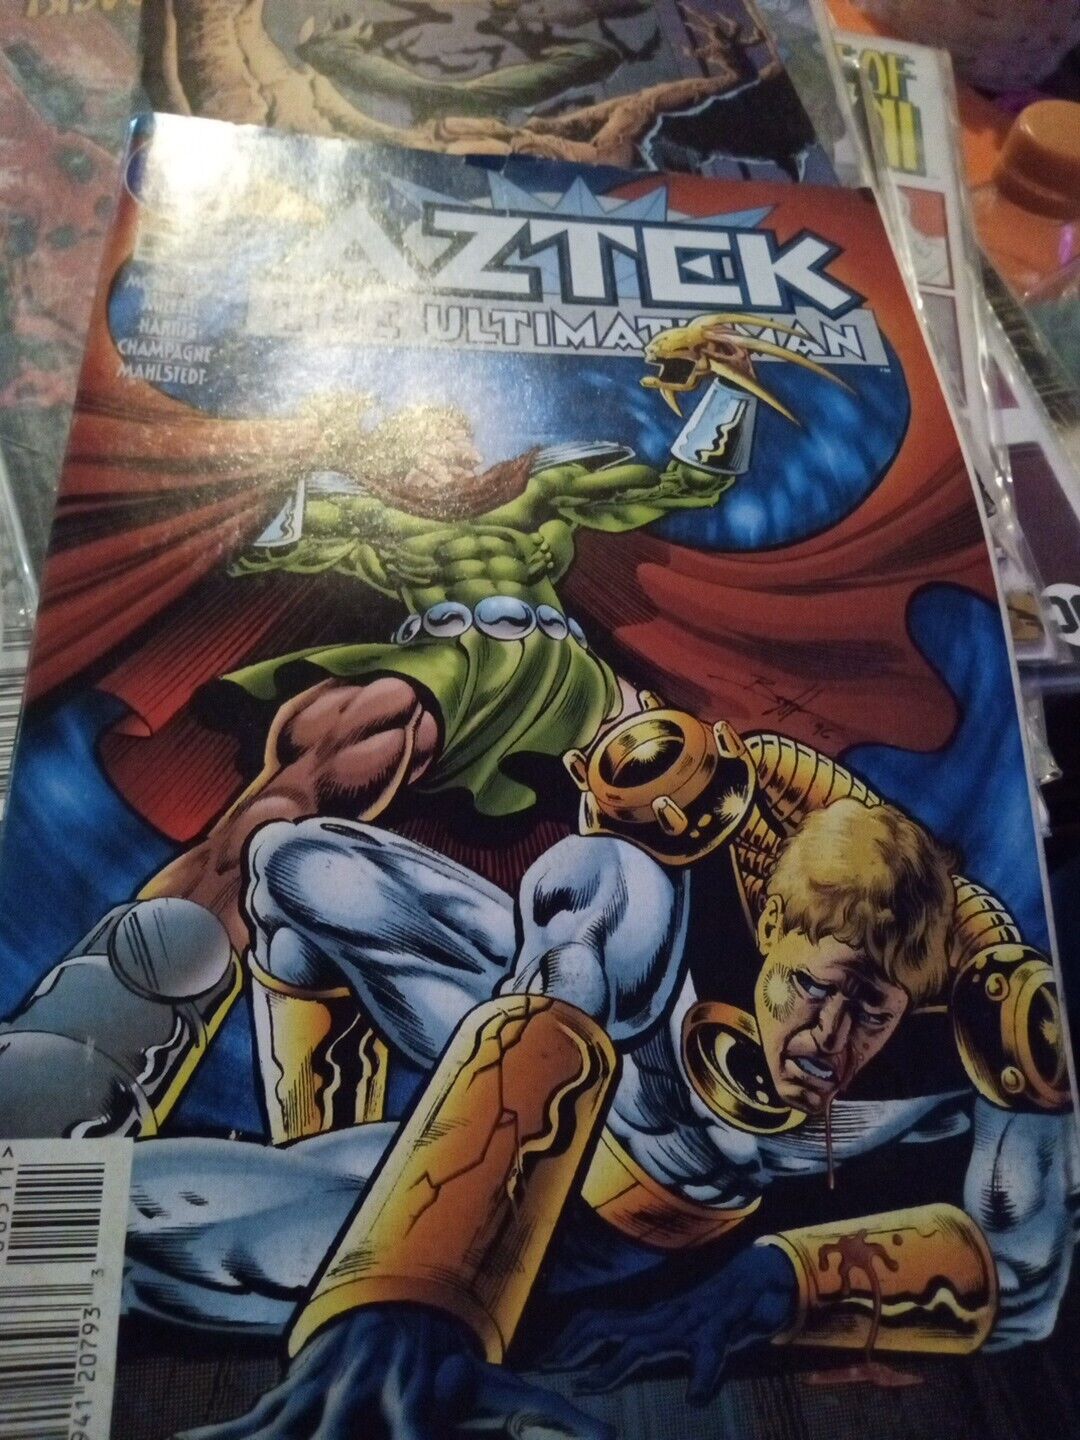 AZTEK THE ULTIMATE MAN #5 (VF-NM) [DC COMICS 1996]